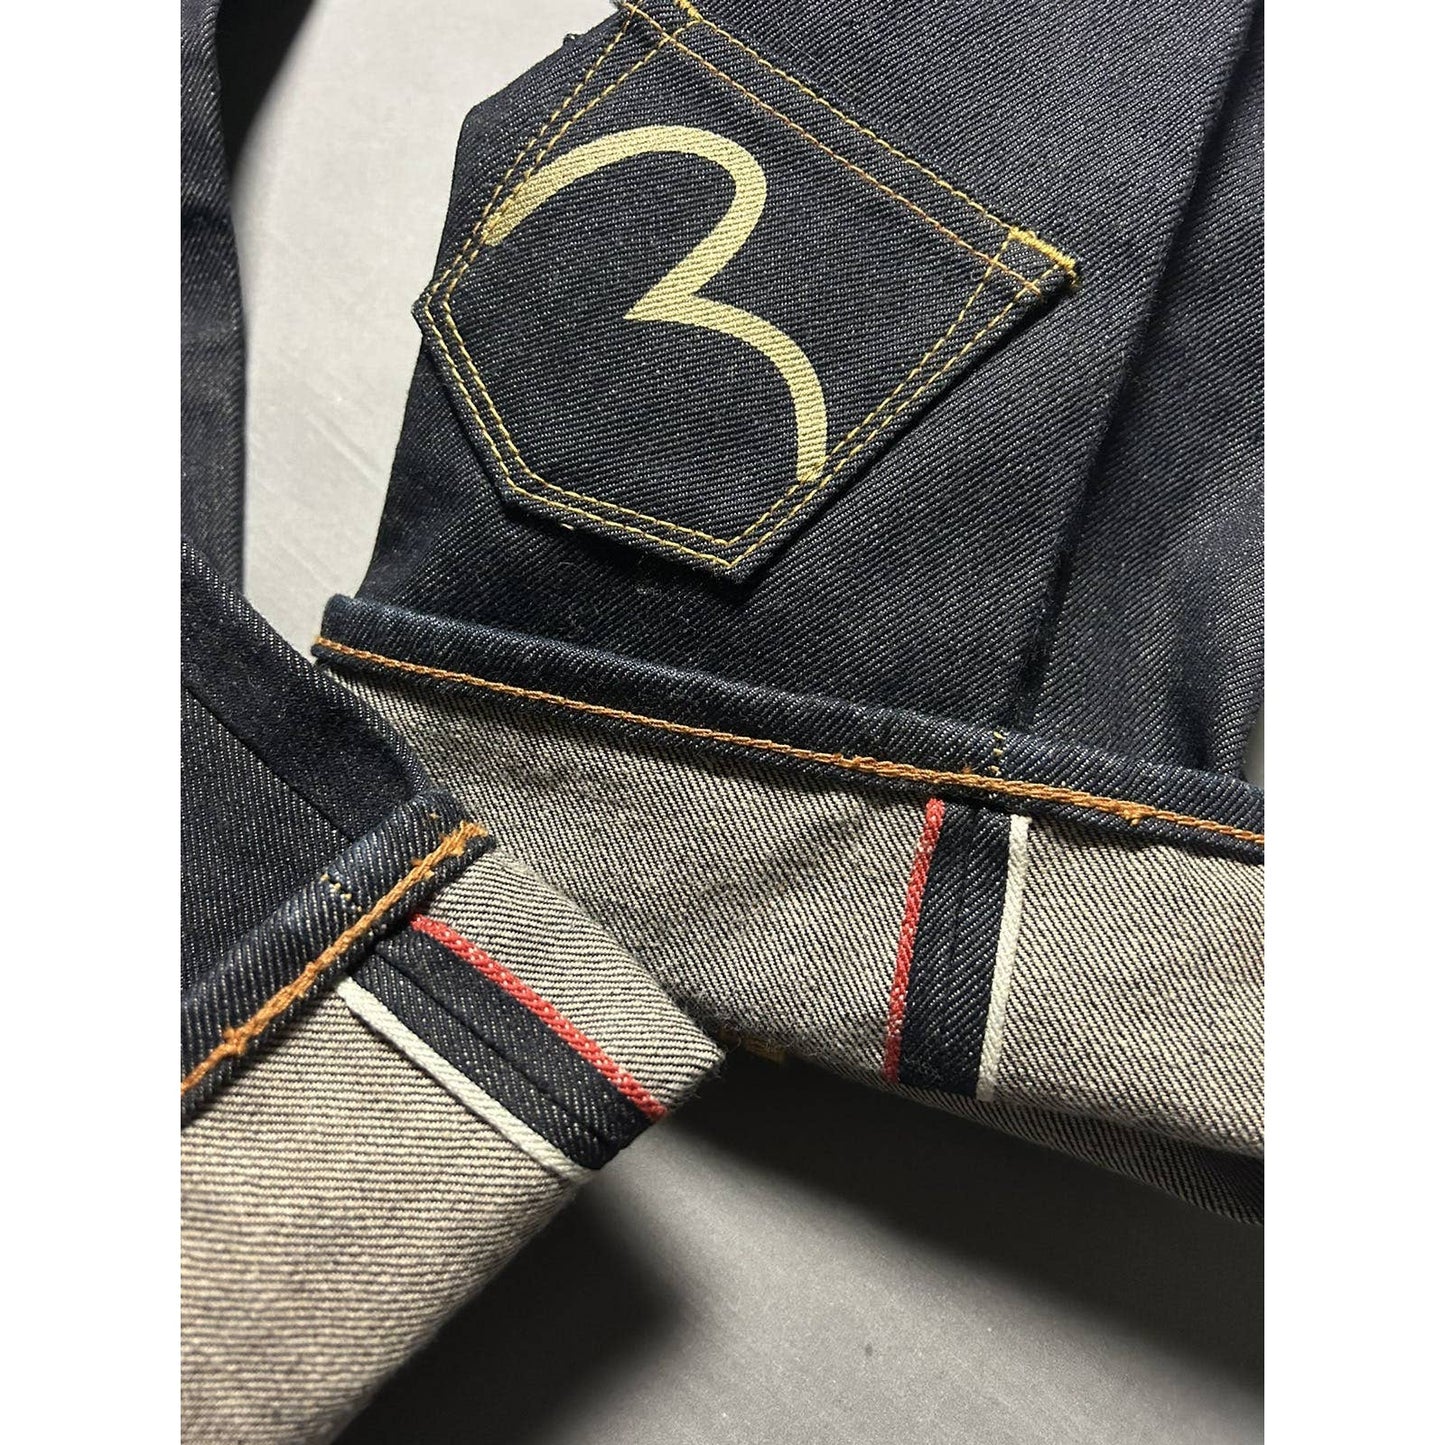 Evisu multipocket jeans black gold vintage selvedge denim